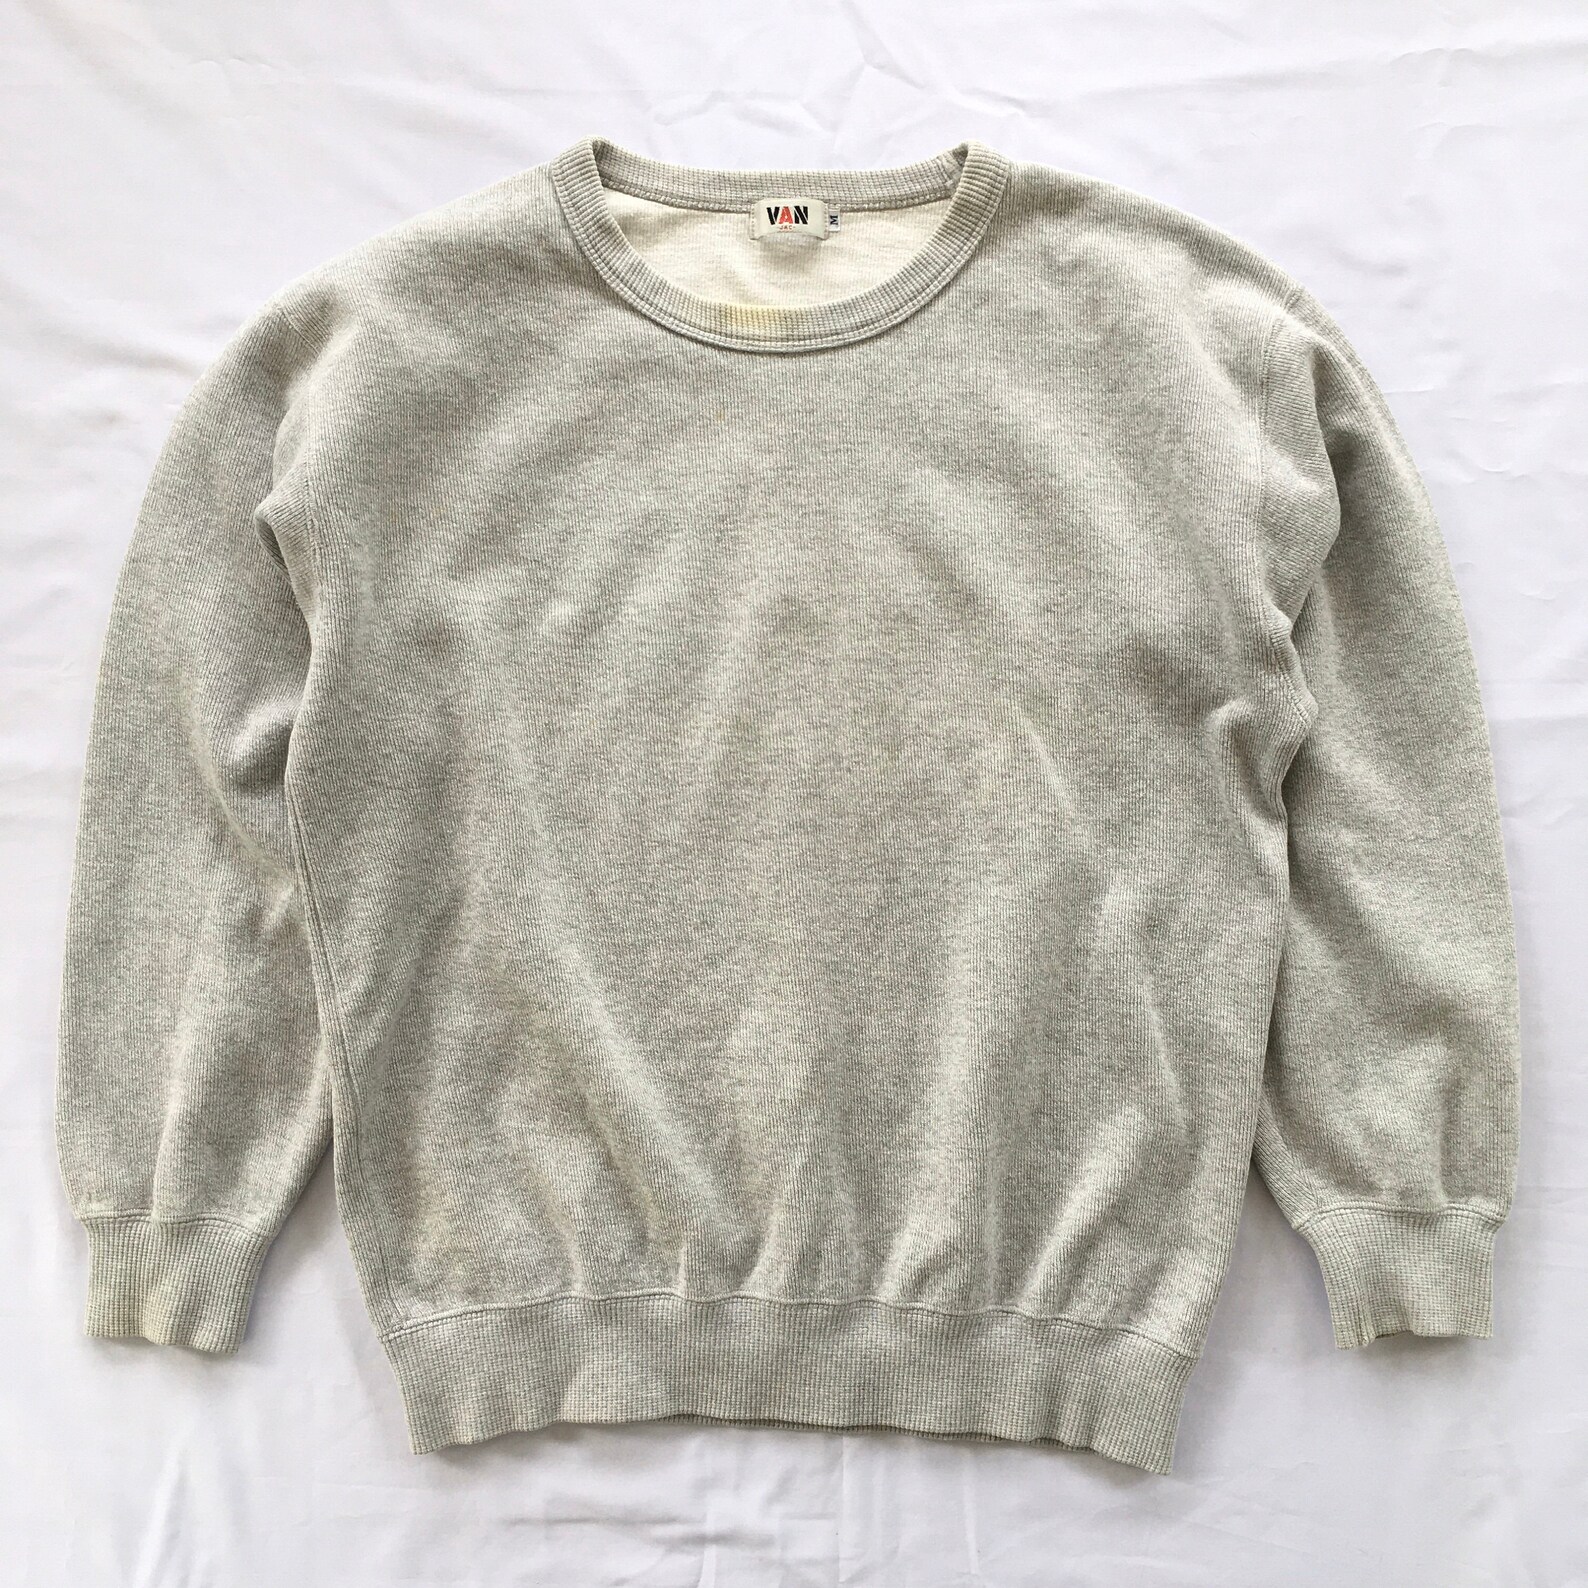 Vintage Van Jac Japan Classic Streetwear Sweatshirt Heather | Etsy